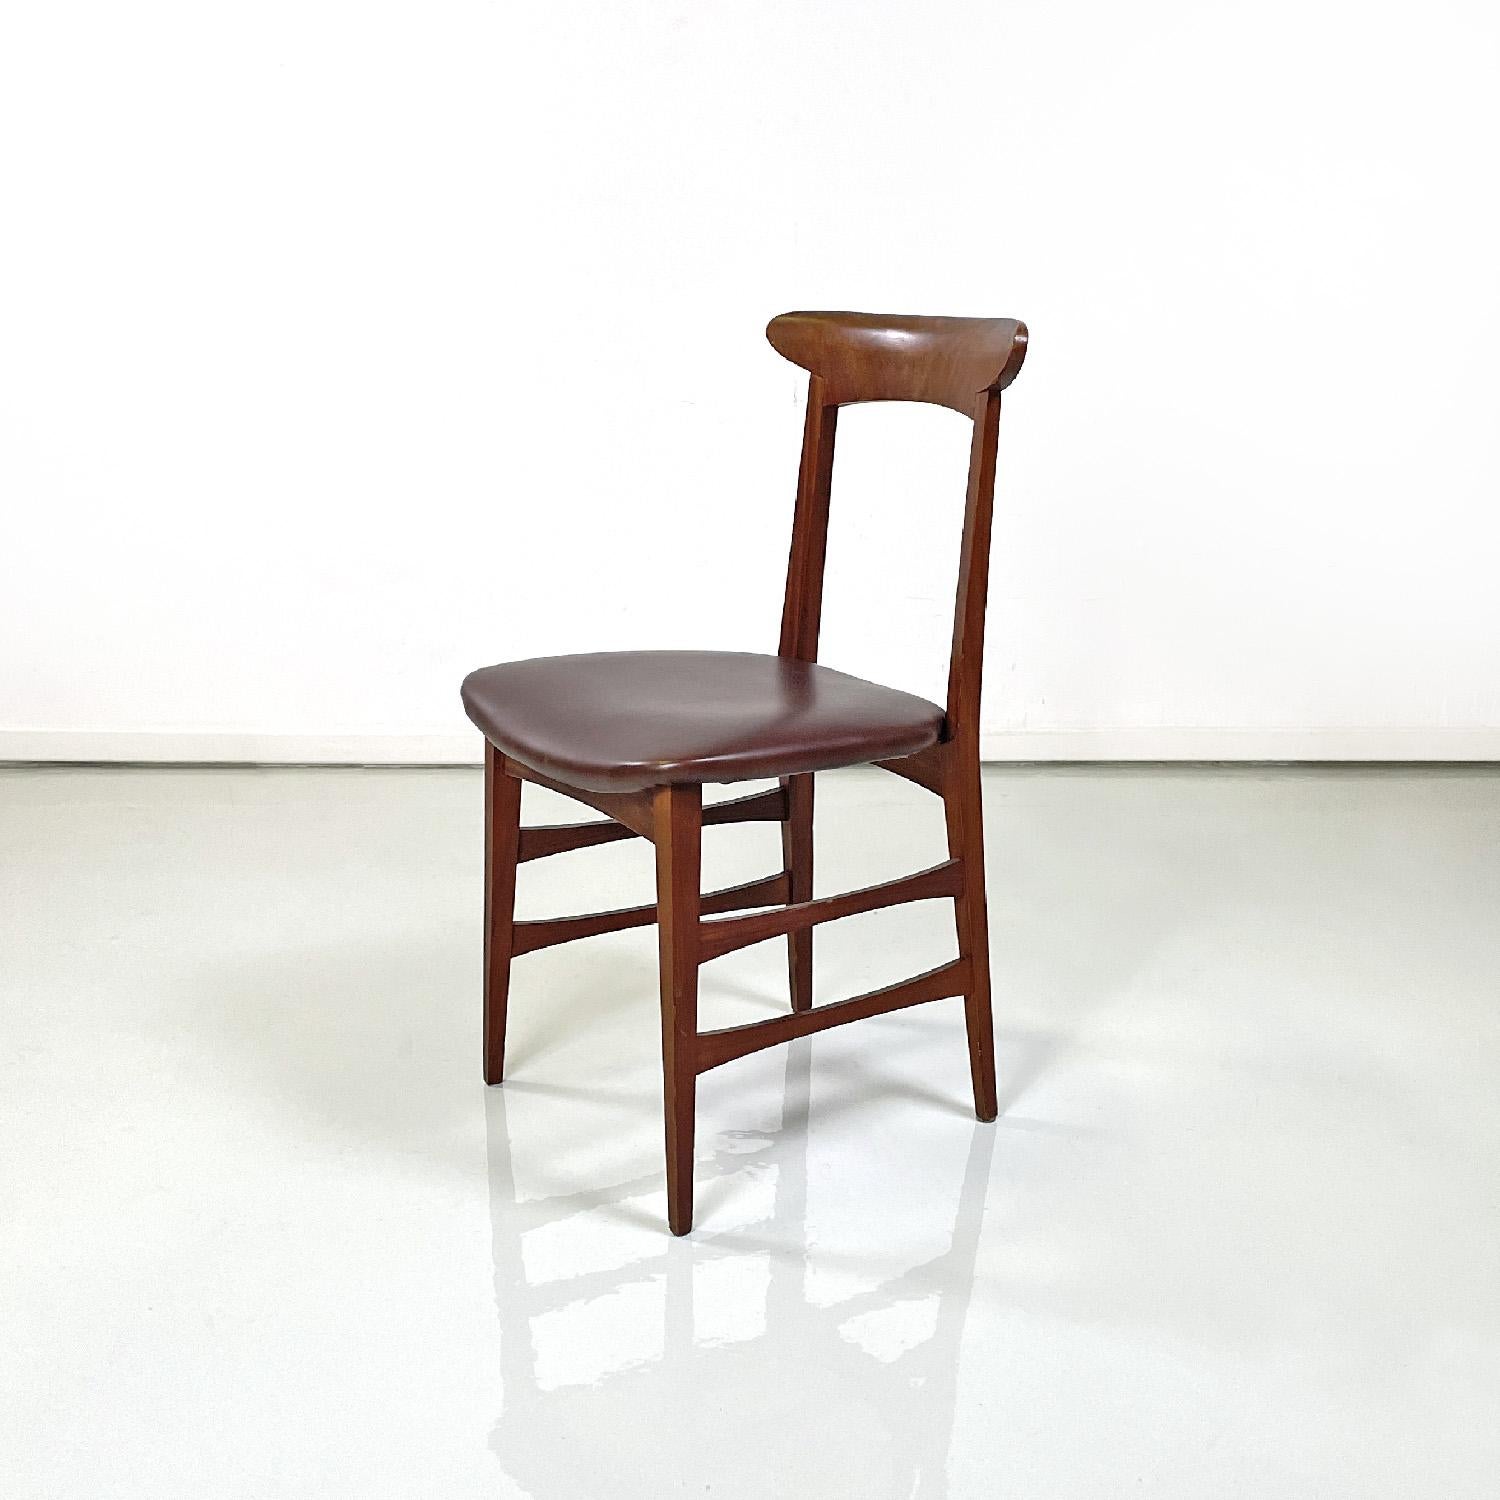 Dänische Stühle aus Holz und braunem Leder aus der Mitte des Jahrhunderts, 1950er Jahre
Satz von sechs Stühlen mit Holzstruktur. Die Rückenlehne ist geschwungen und hat eine längliche und abgerundete Form an den Seiten, die Beine haben einen